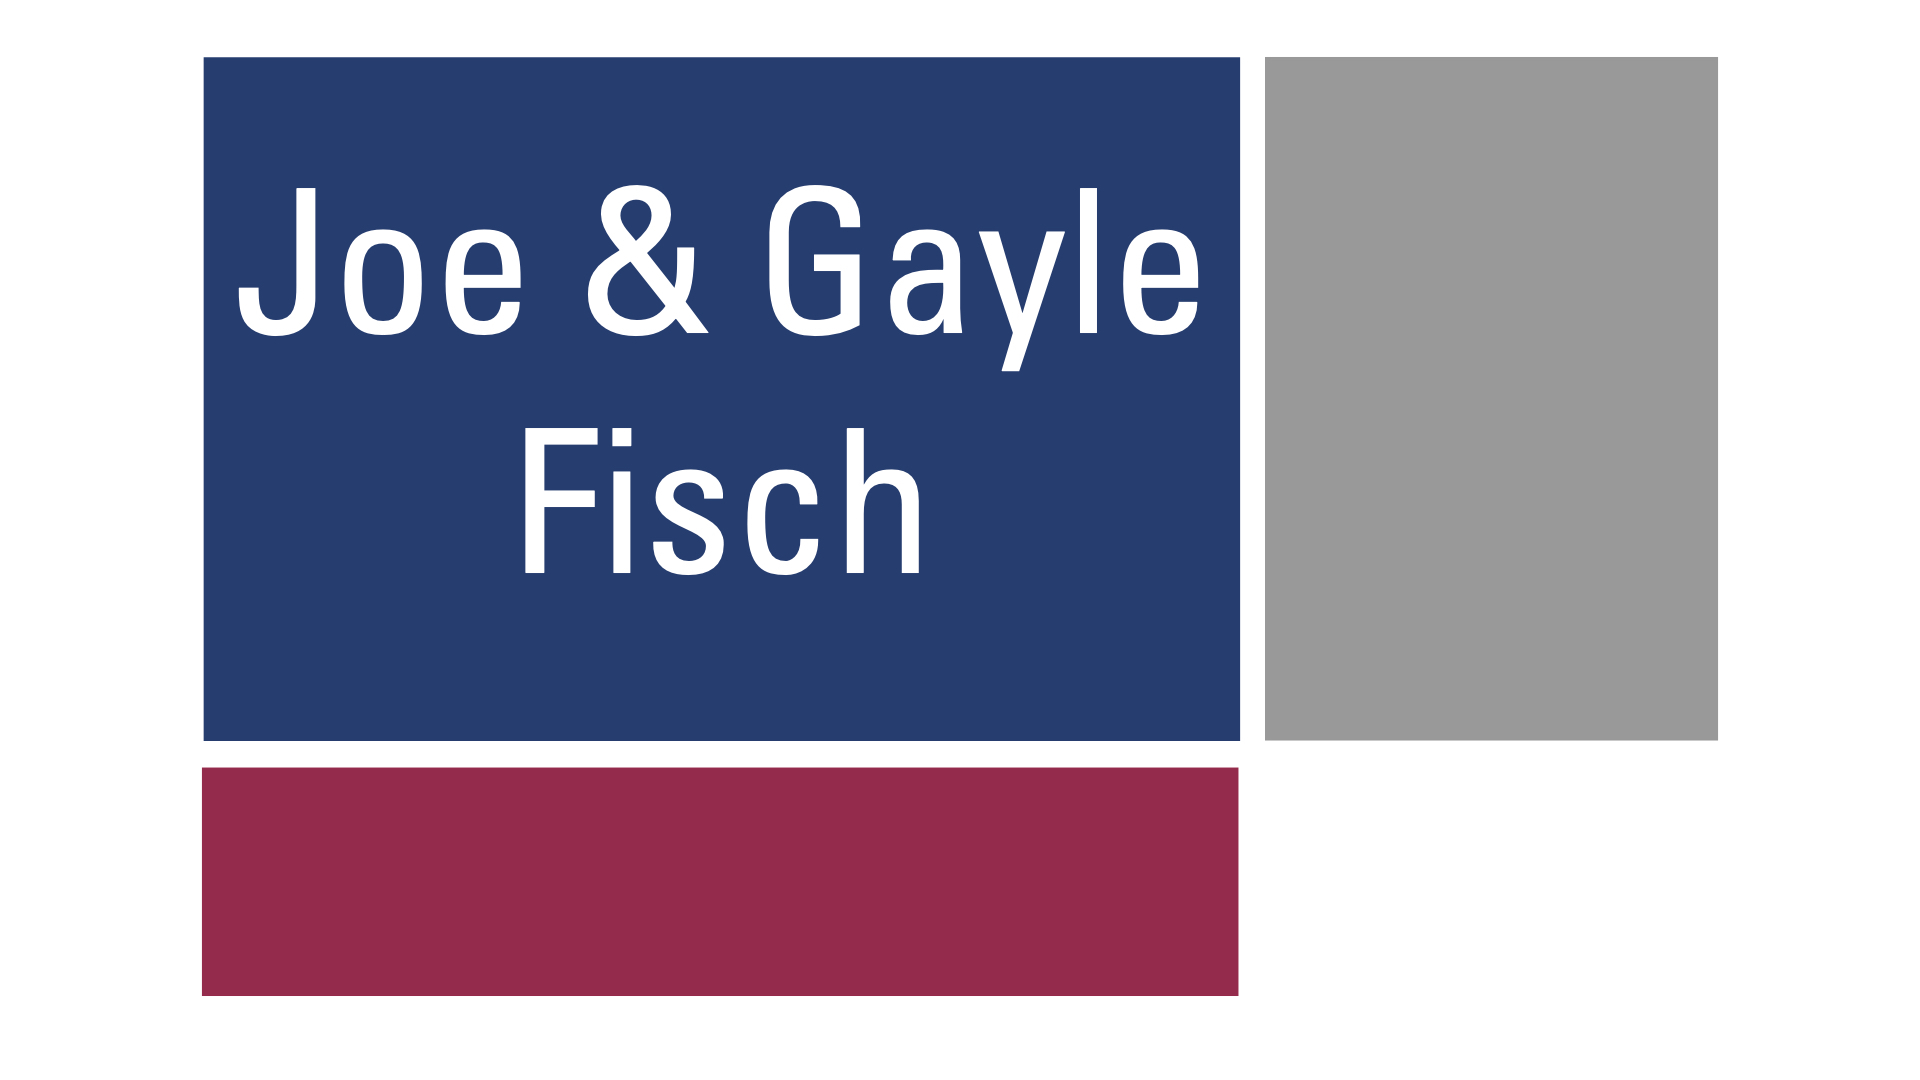 Joe and Gayle Fisch